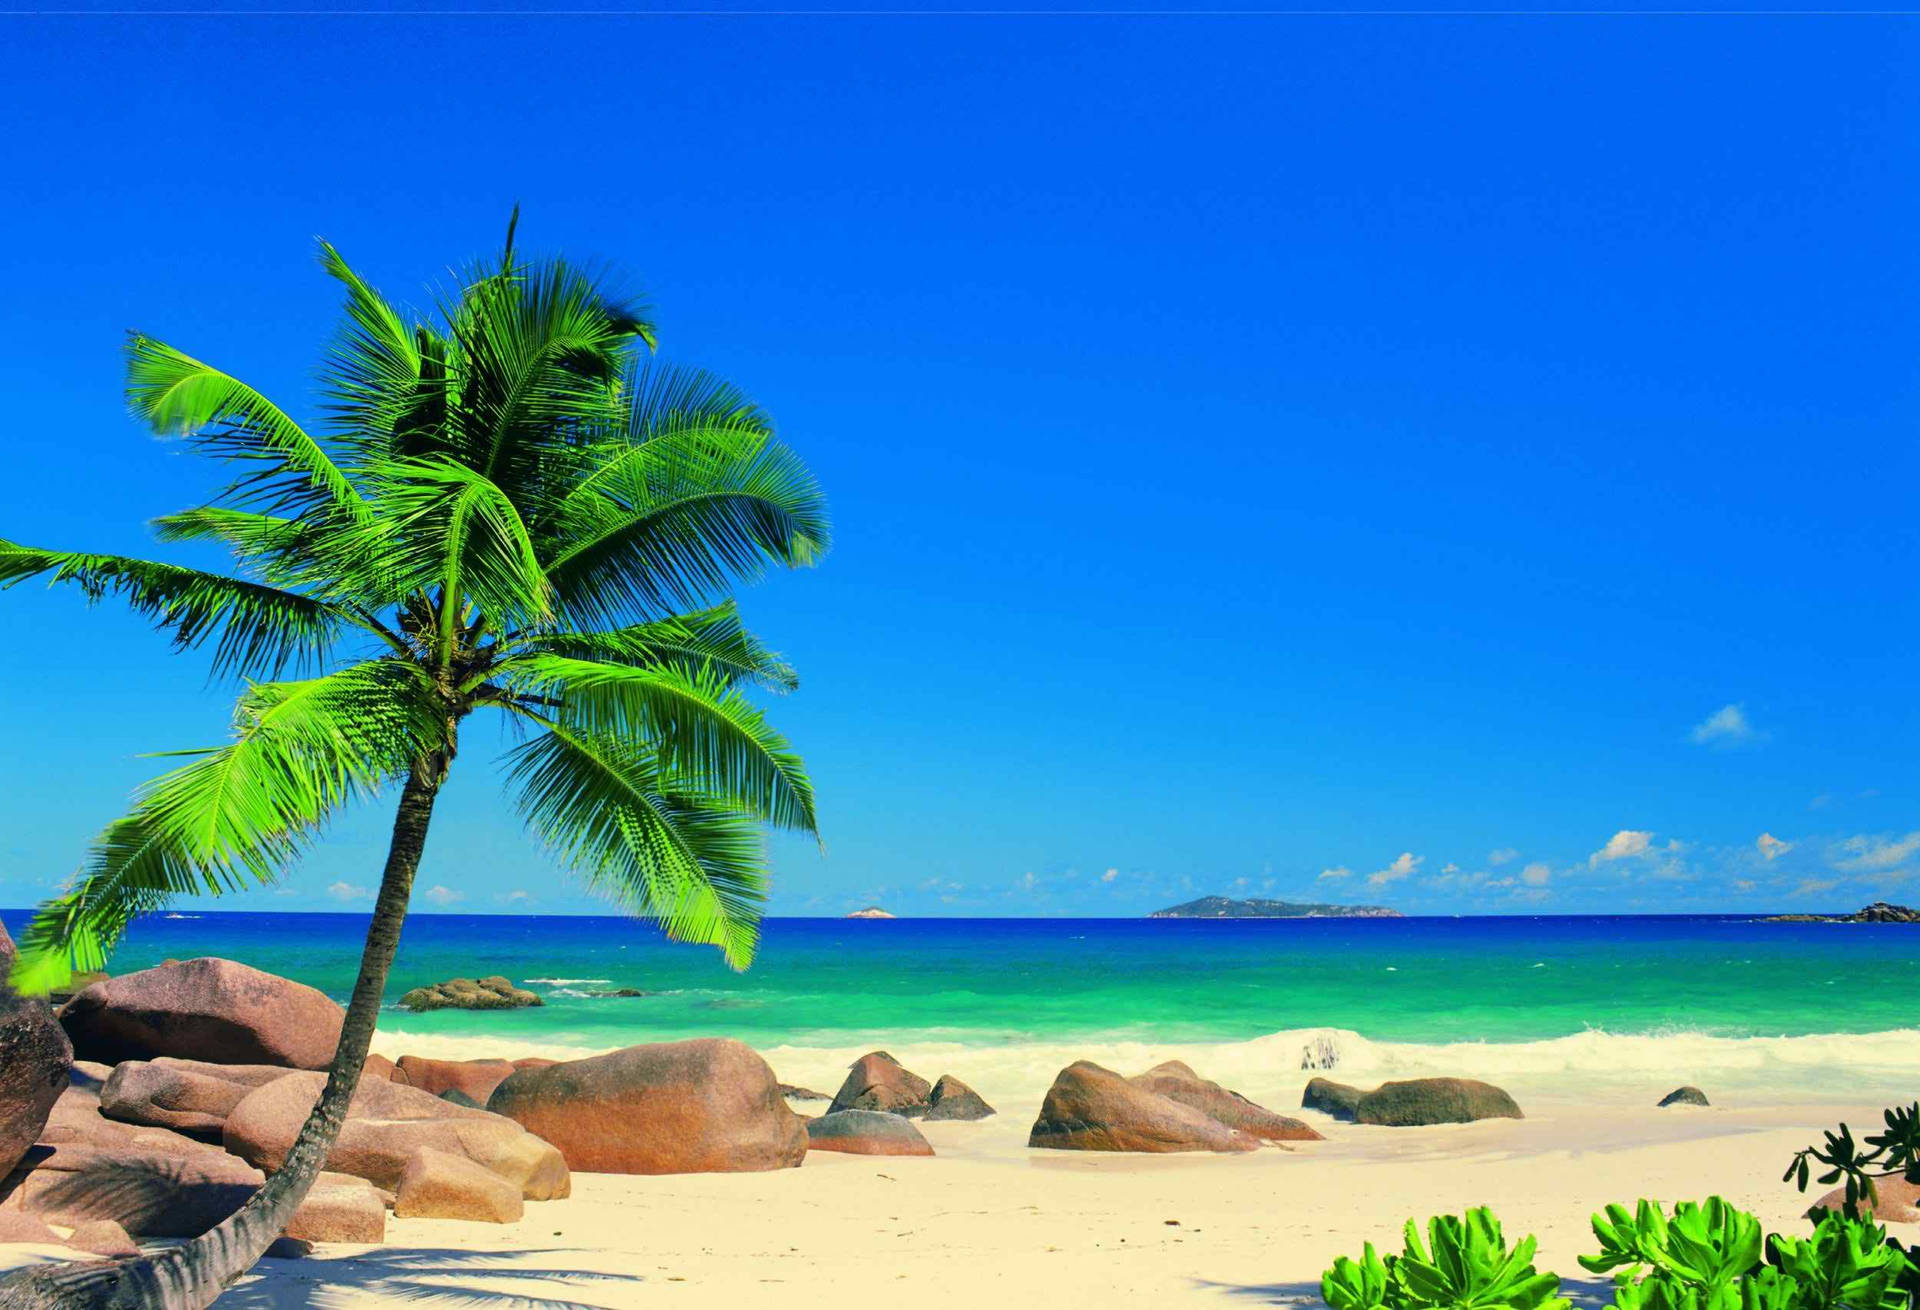 Caribbean Island Paradise Background